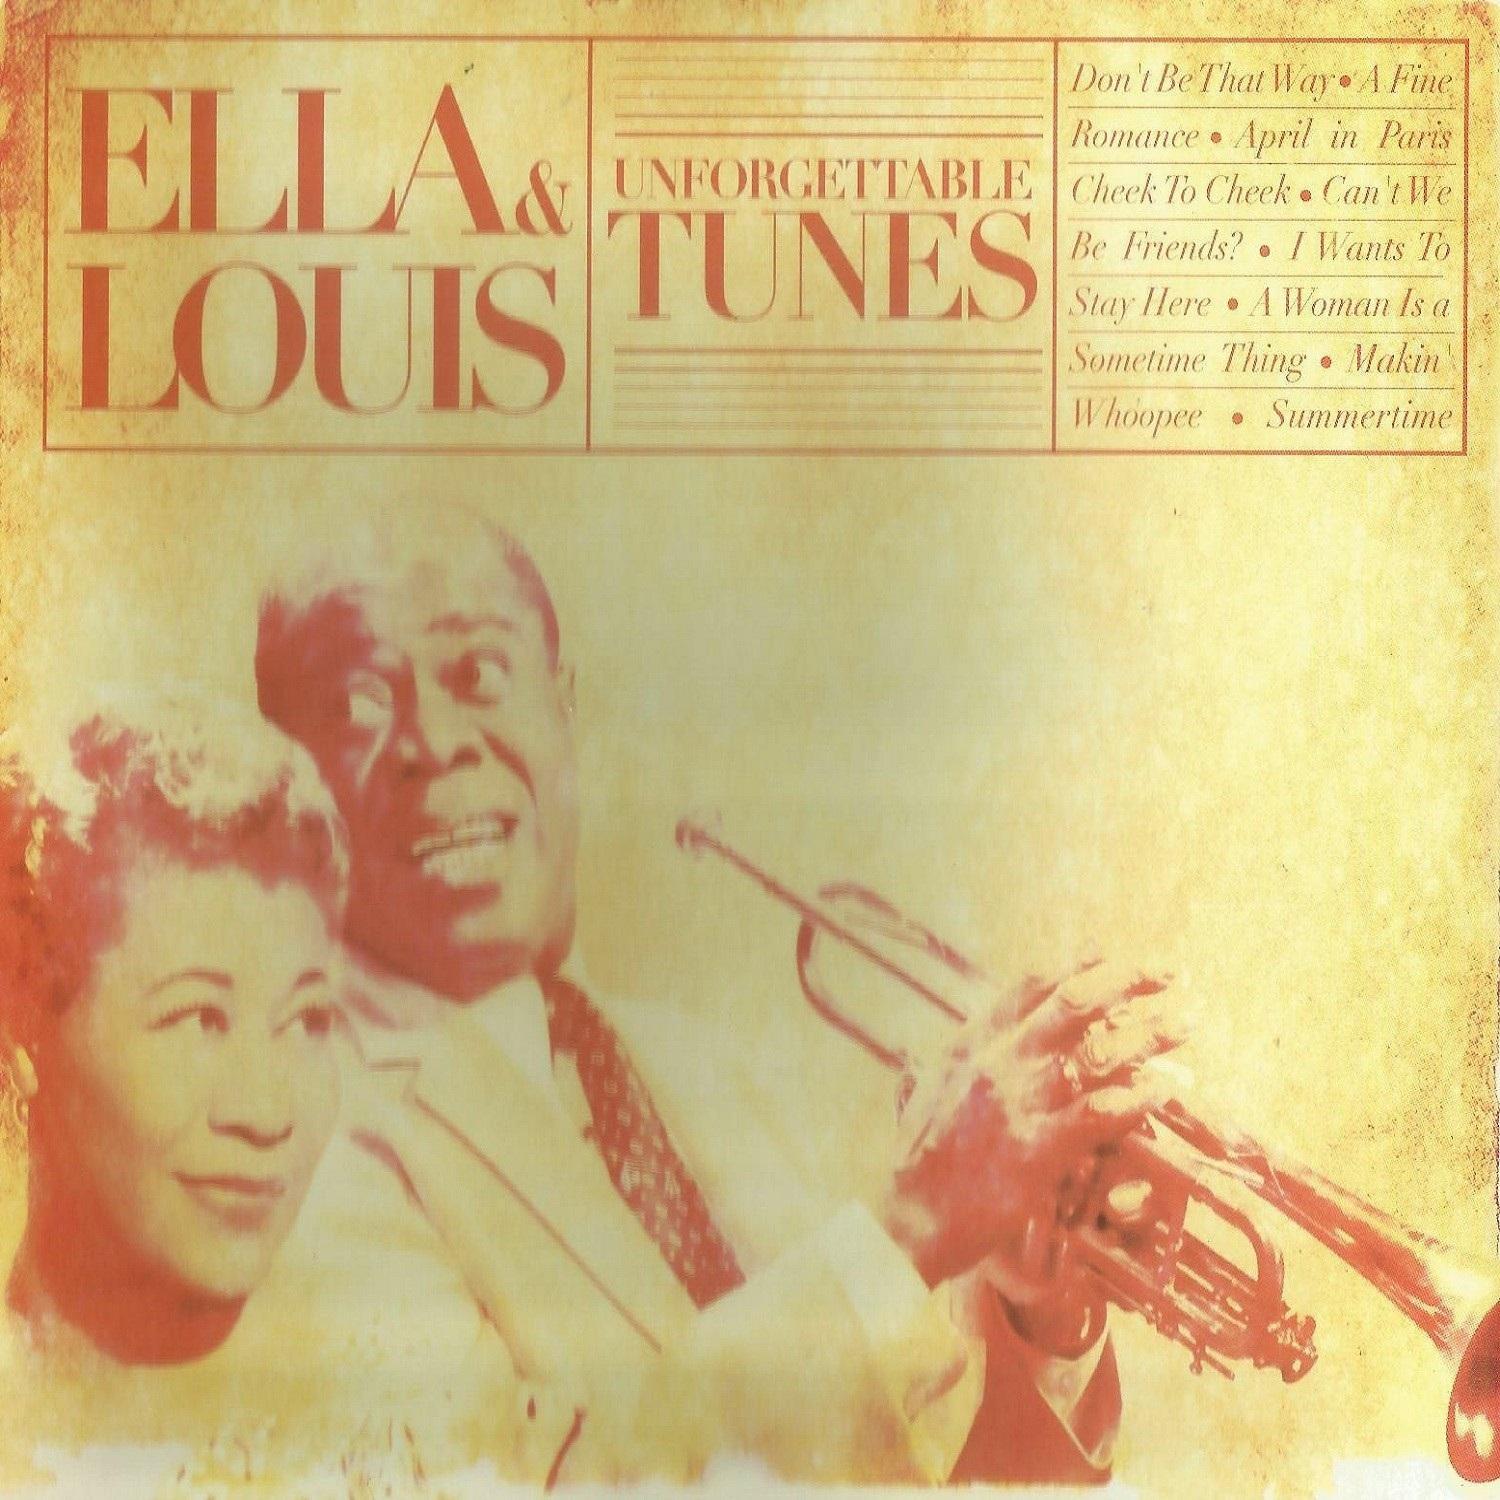 Ella & Louis, Unforgettable Tunes